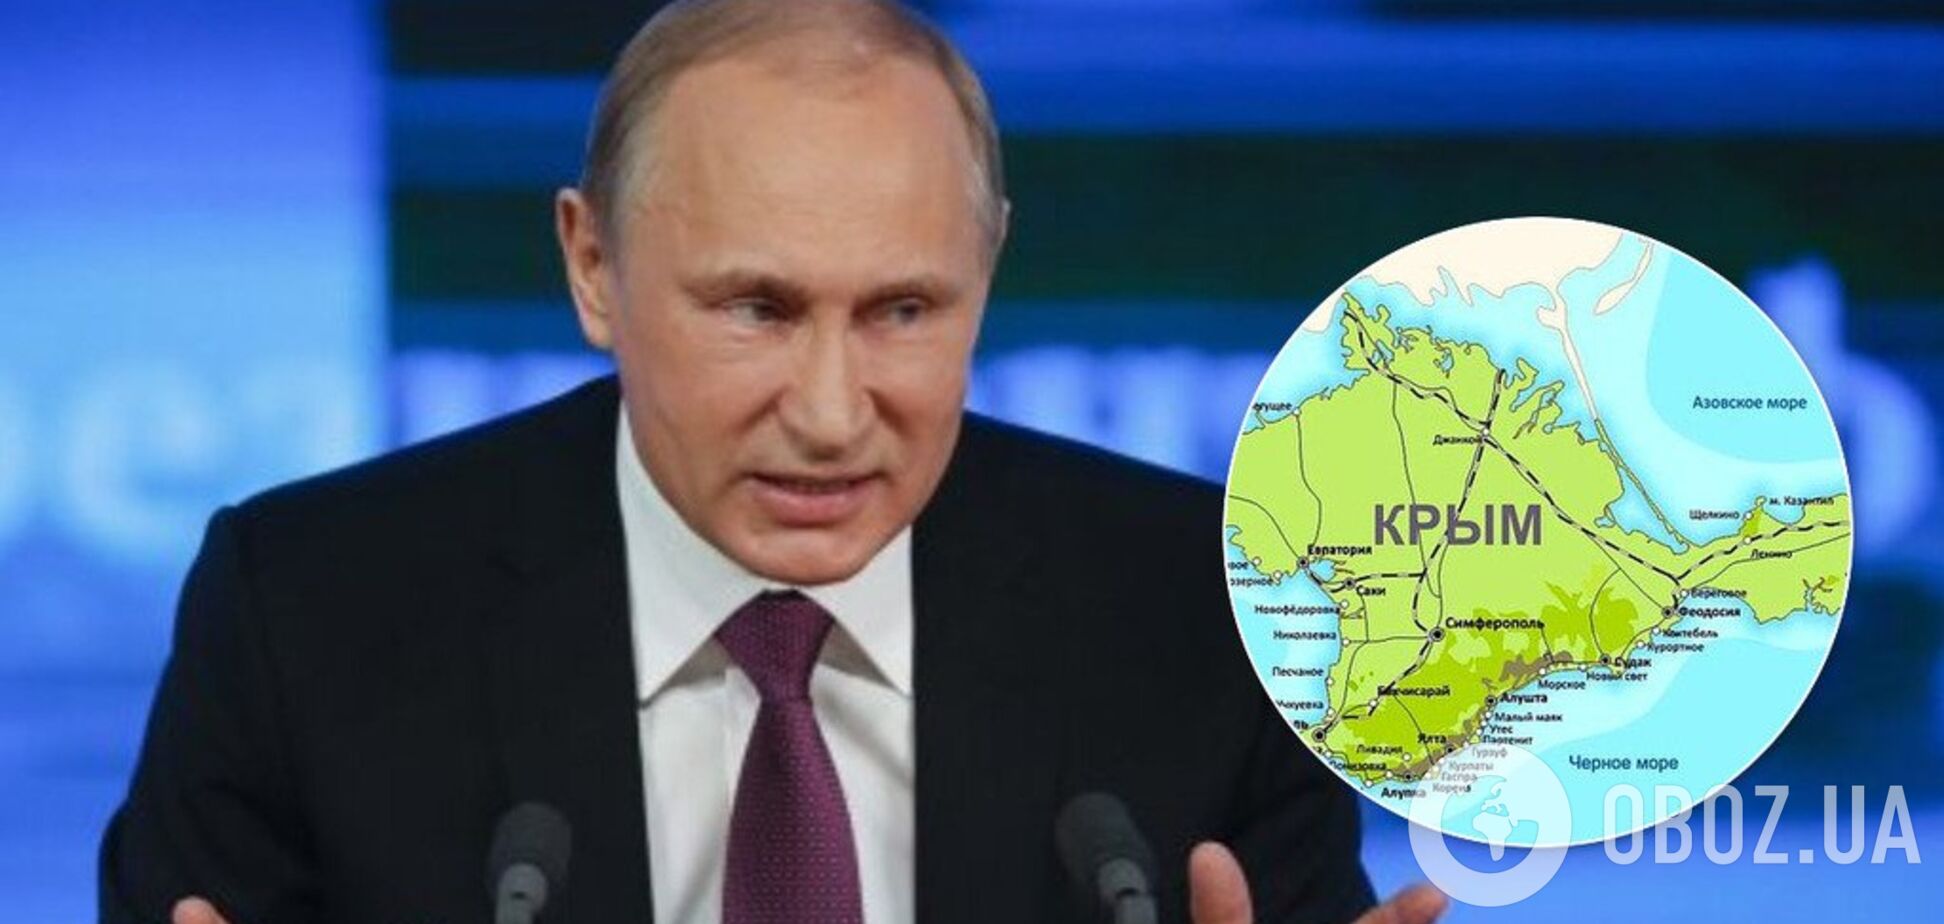 Меняет конституцию РФ: в плане Путина заметили 'крымский сценарий'